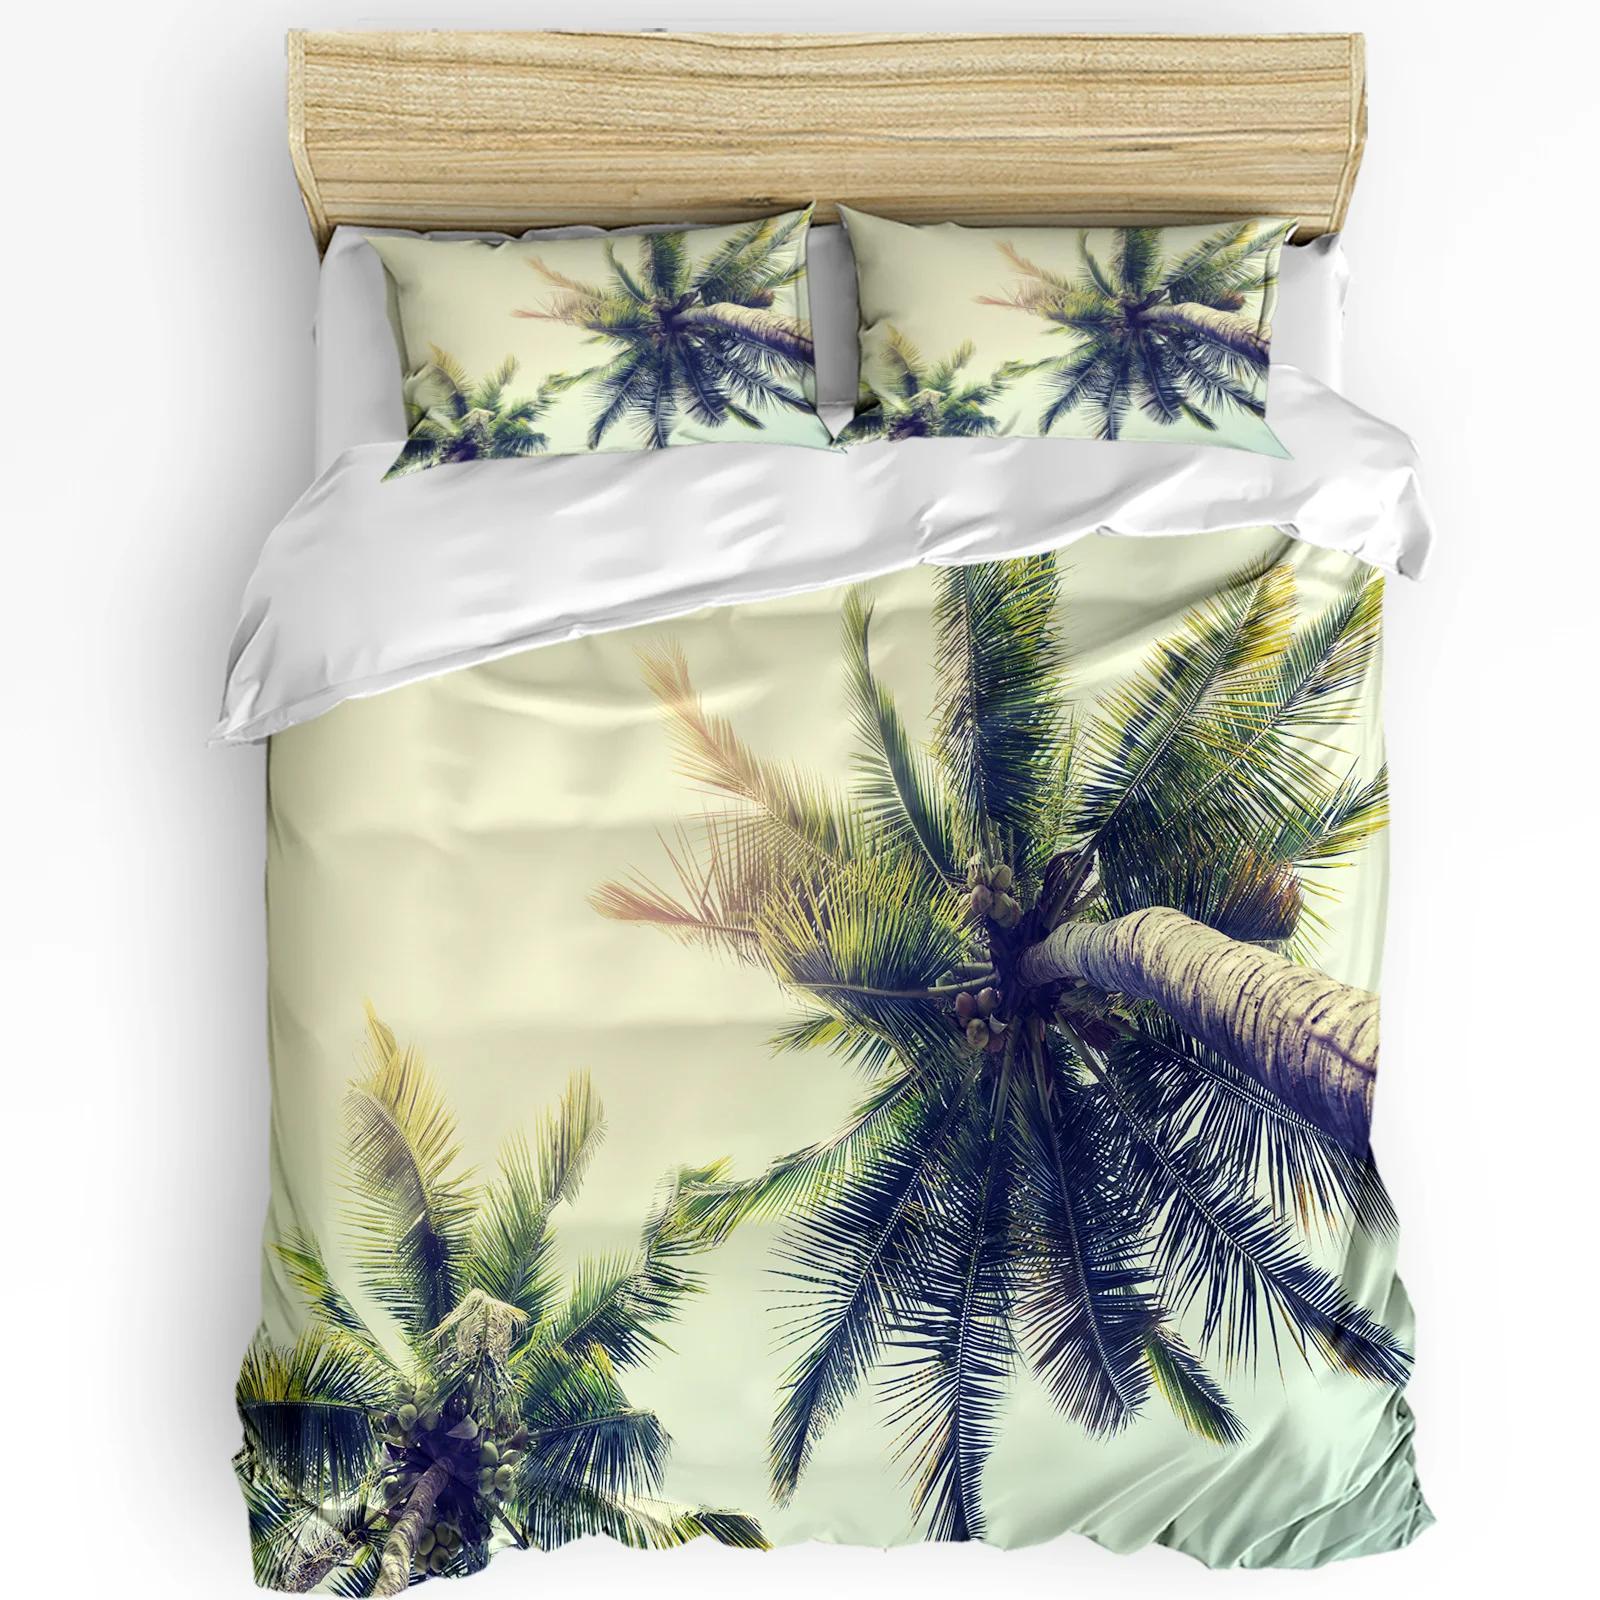 Tropical Landscape Beach Palm Trees Bedding Set 3pcs Duvet Cover Pillowcase Kids Adult Quilt Cover Double Bed Set Ho